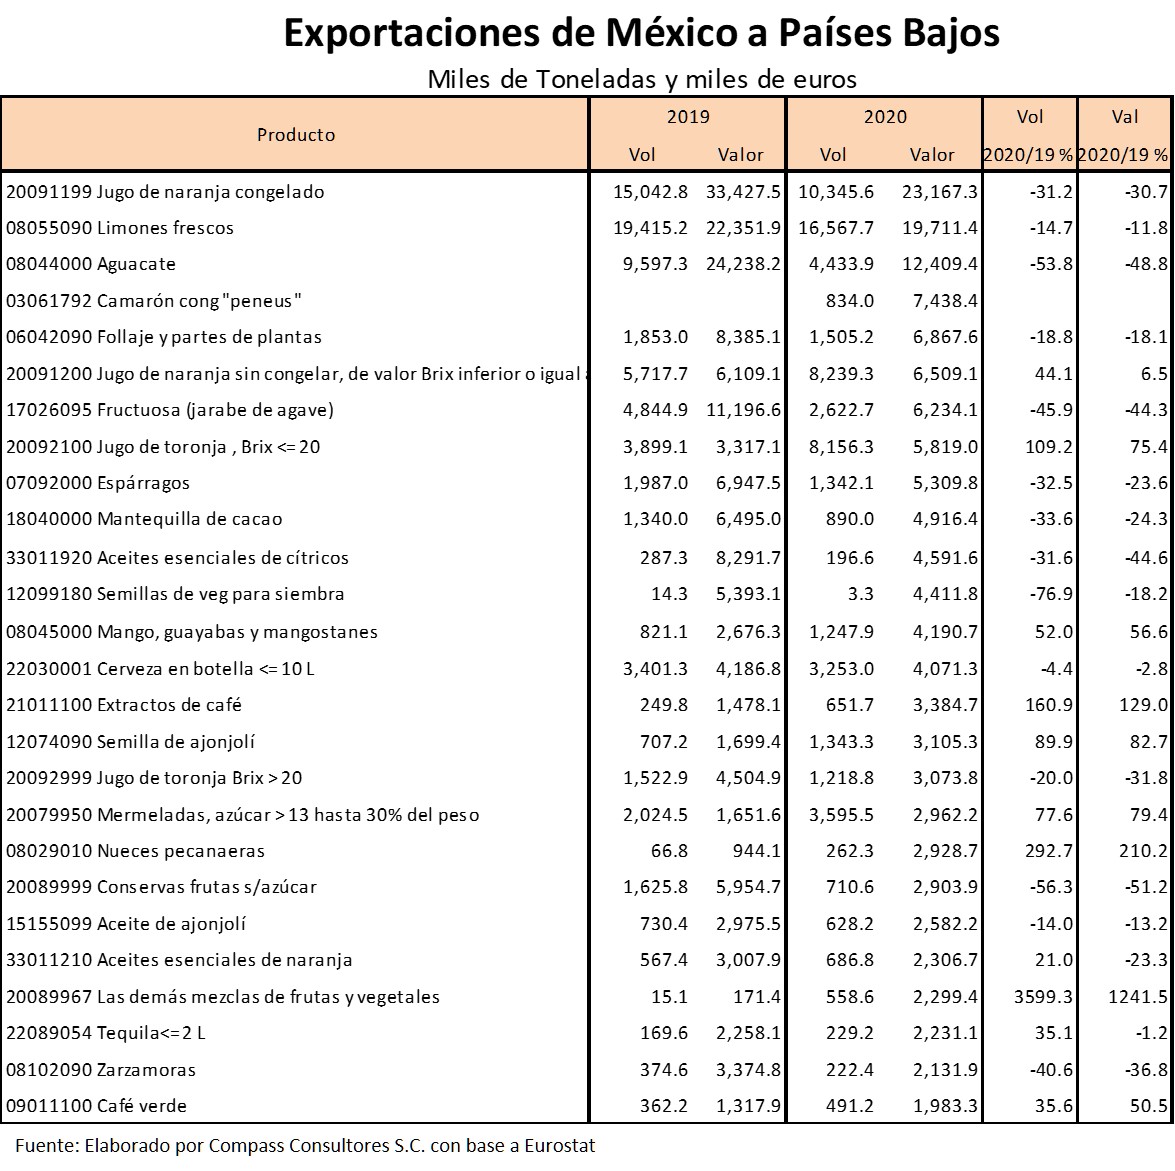 Exportaciones de Mxico a Pases Bajos por Producto